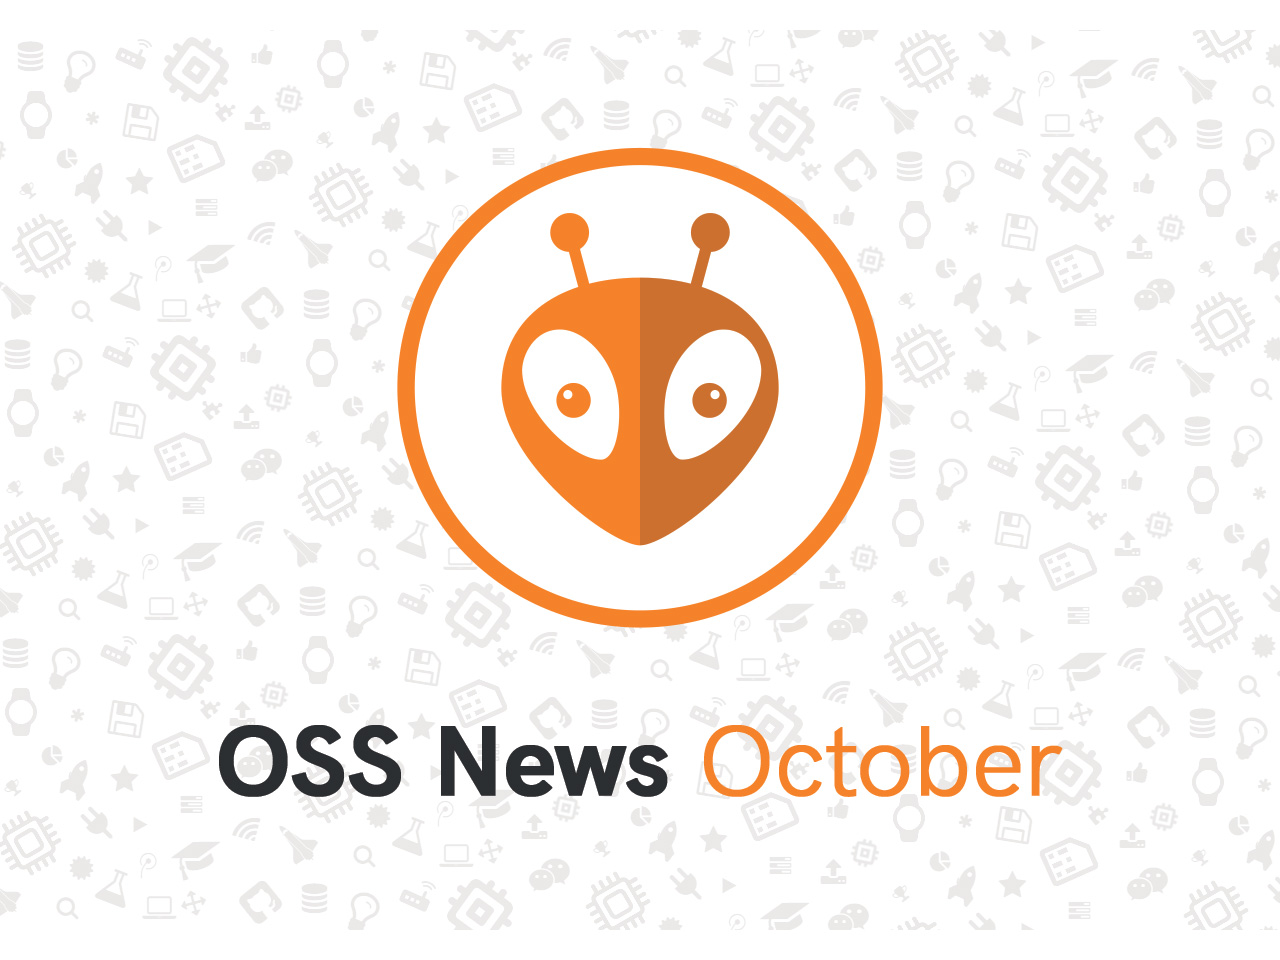 PlatformIO Open Source October Updates